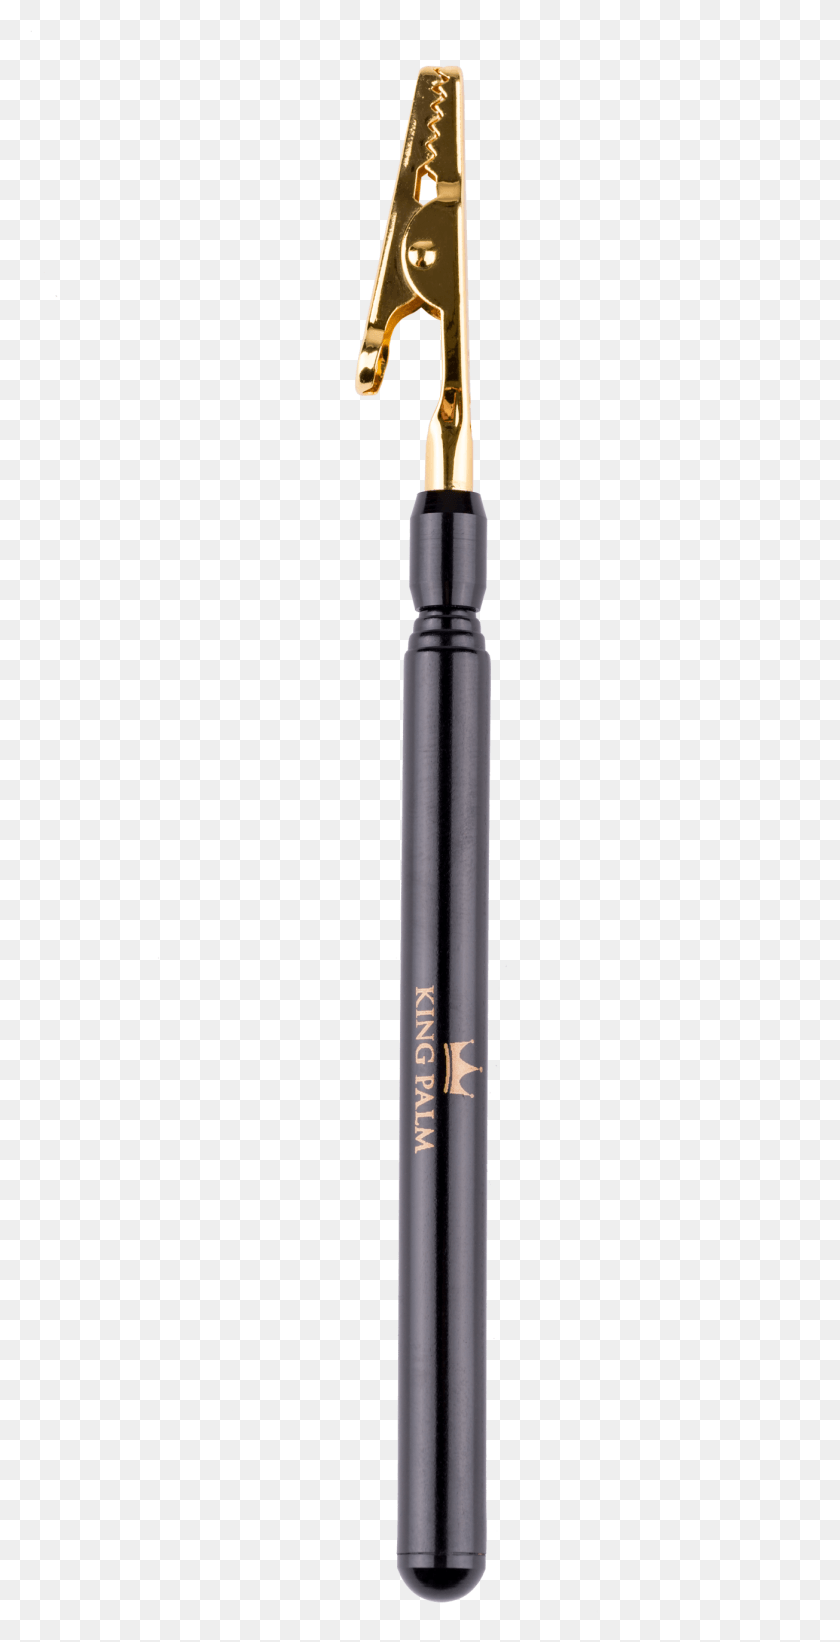 1305x2647 Выдвижной Зонт С Дымовыми Зажимами, Ручка, Инструмент, Кисть Hd Png Скачать